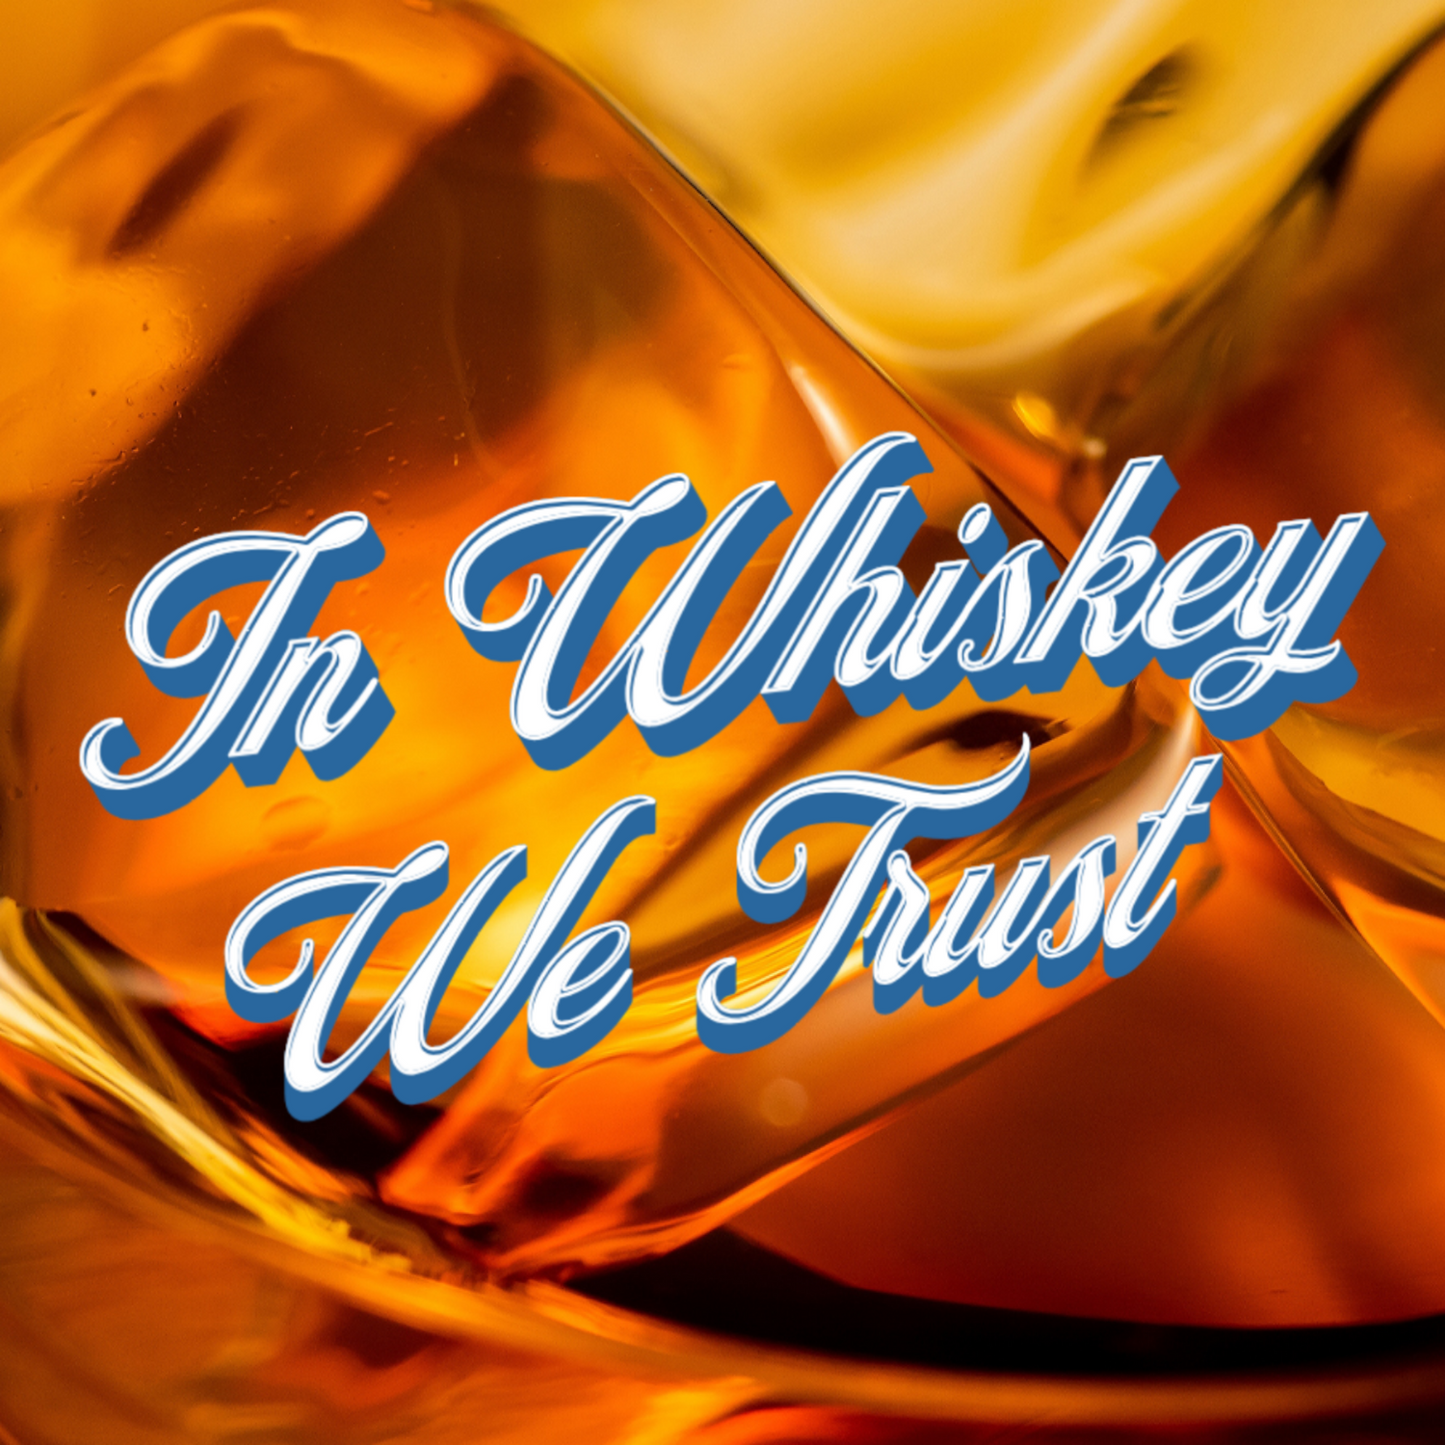 Funny Whiskey Glasses for Men, In Whiskey We Trust Whiskey Tumbler